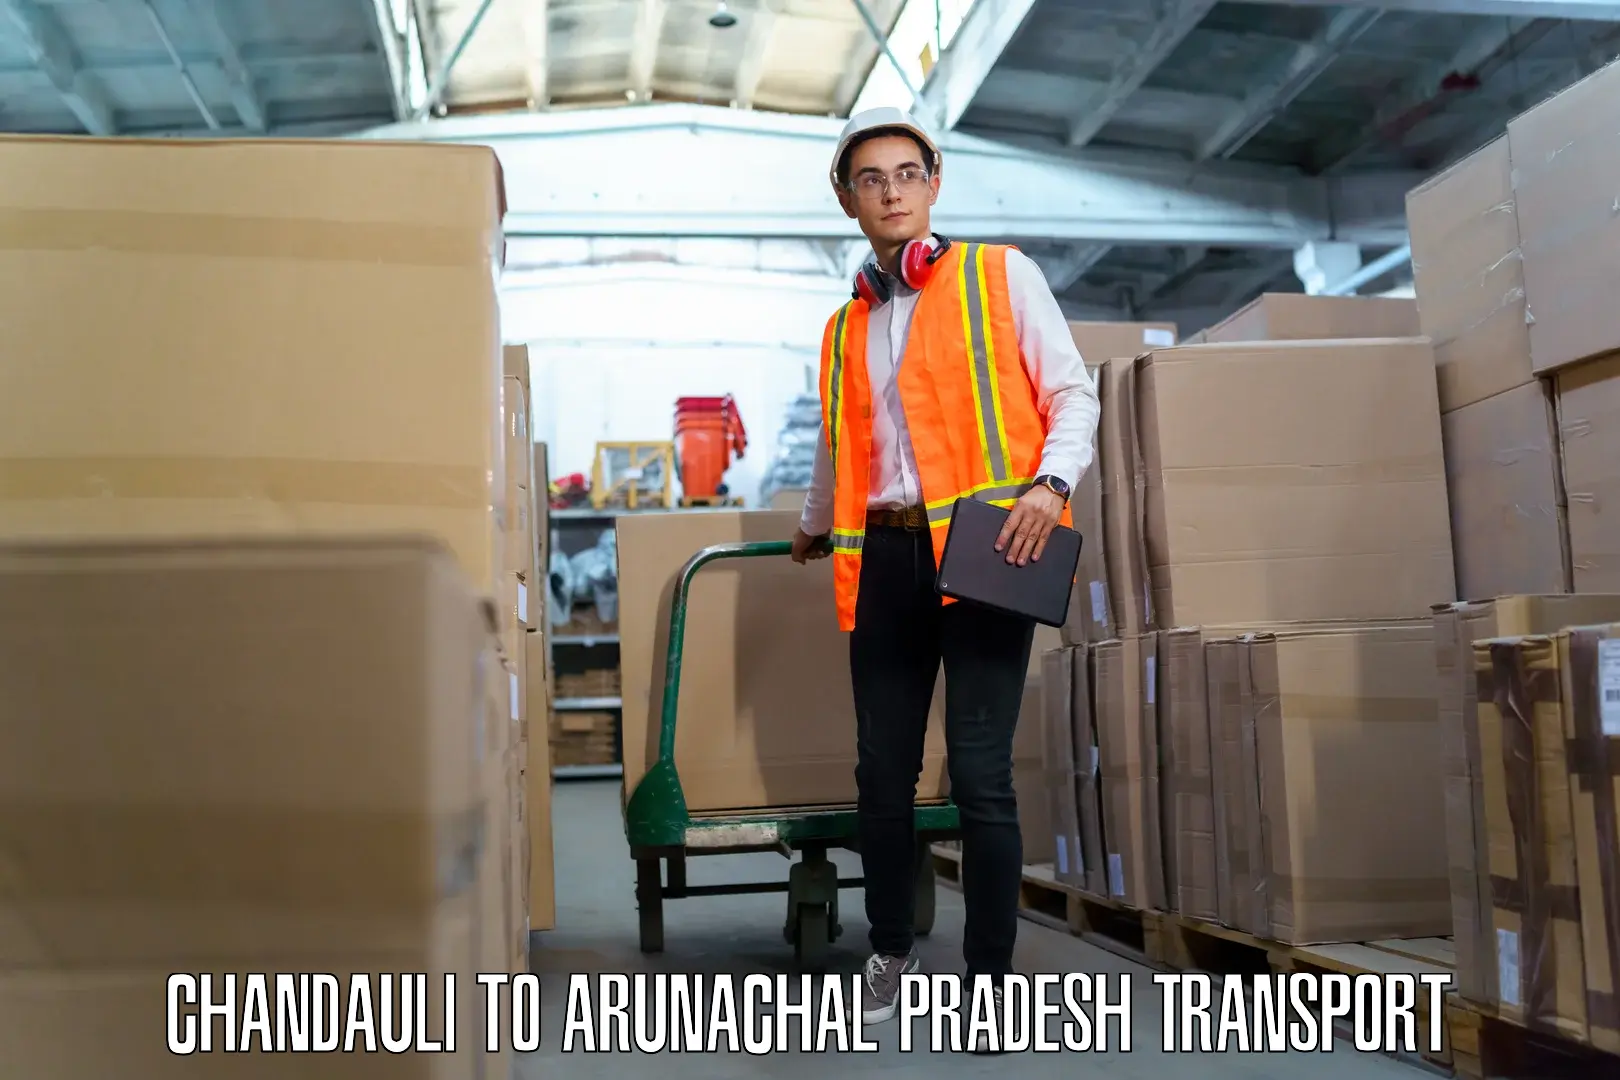 Goods delivery service Chandauli to Arunachal Pradesh